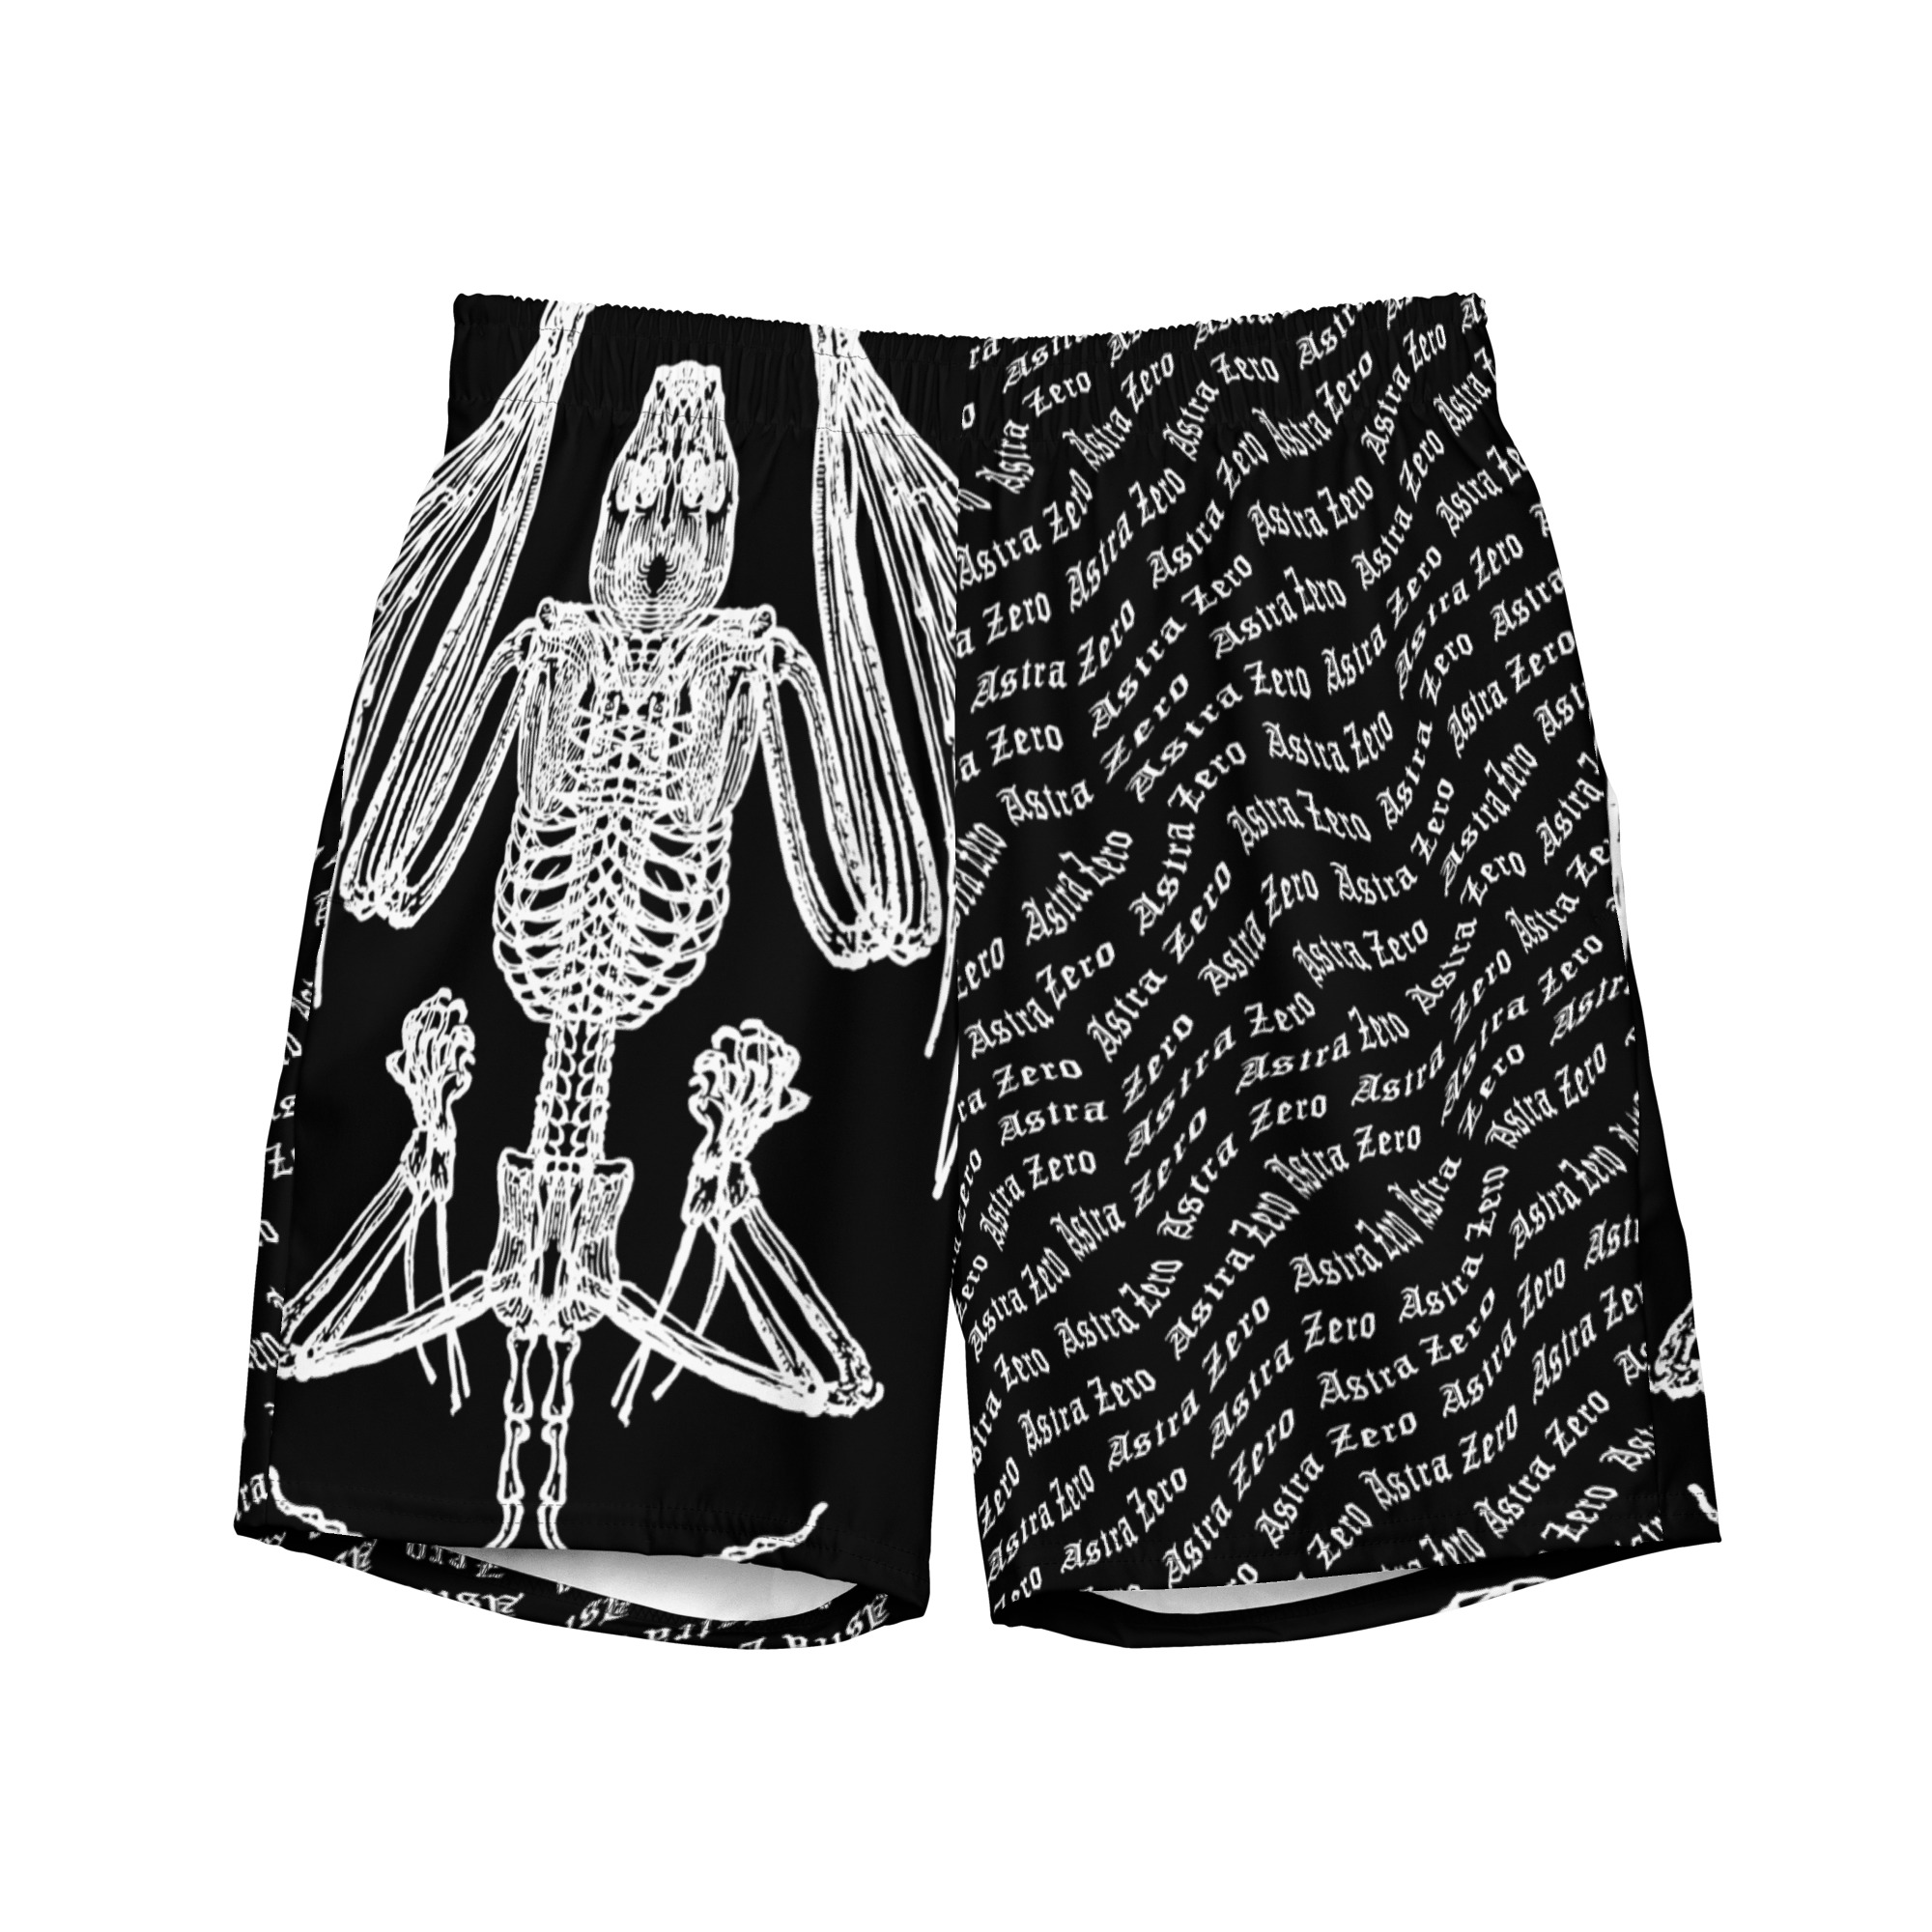 Featured image for “Bat Skeleton - Men's swim trunks”